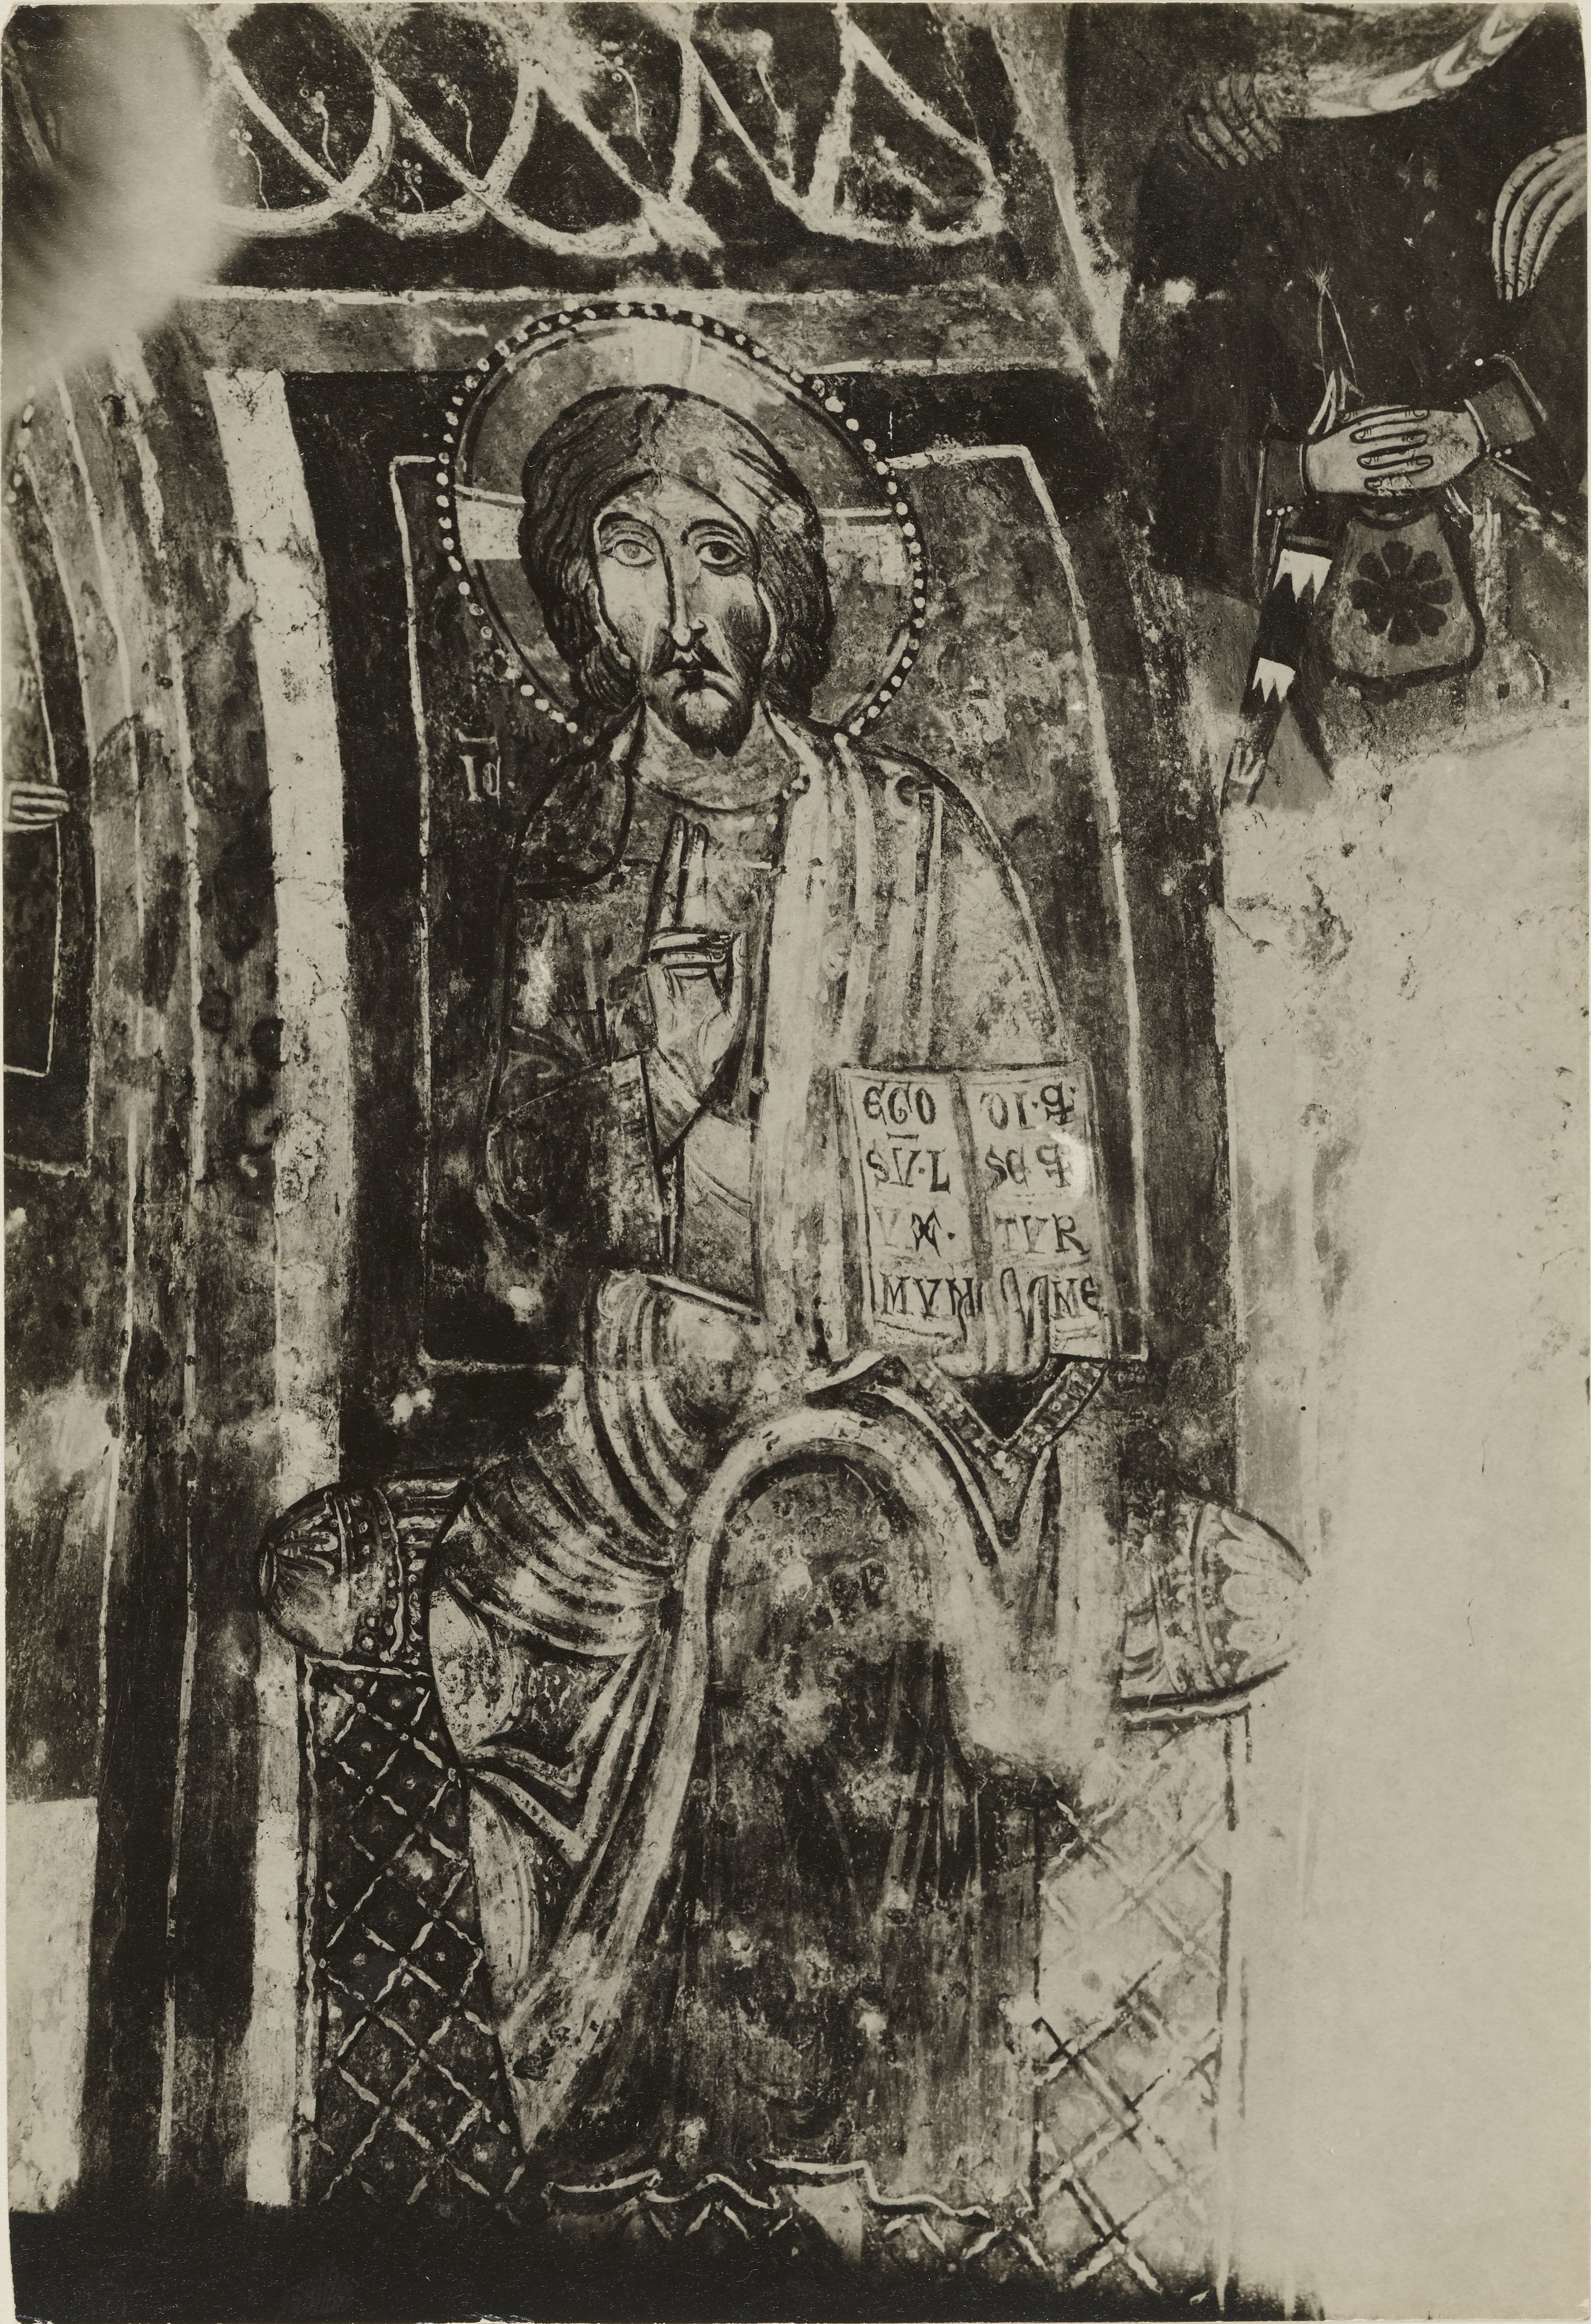 Fotografo non identificato, Melfi - Chiesa rupestre di S. Margherita, Cristo in trono, 1926-1950, gelatina ai sali d'argento, MPI6061799